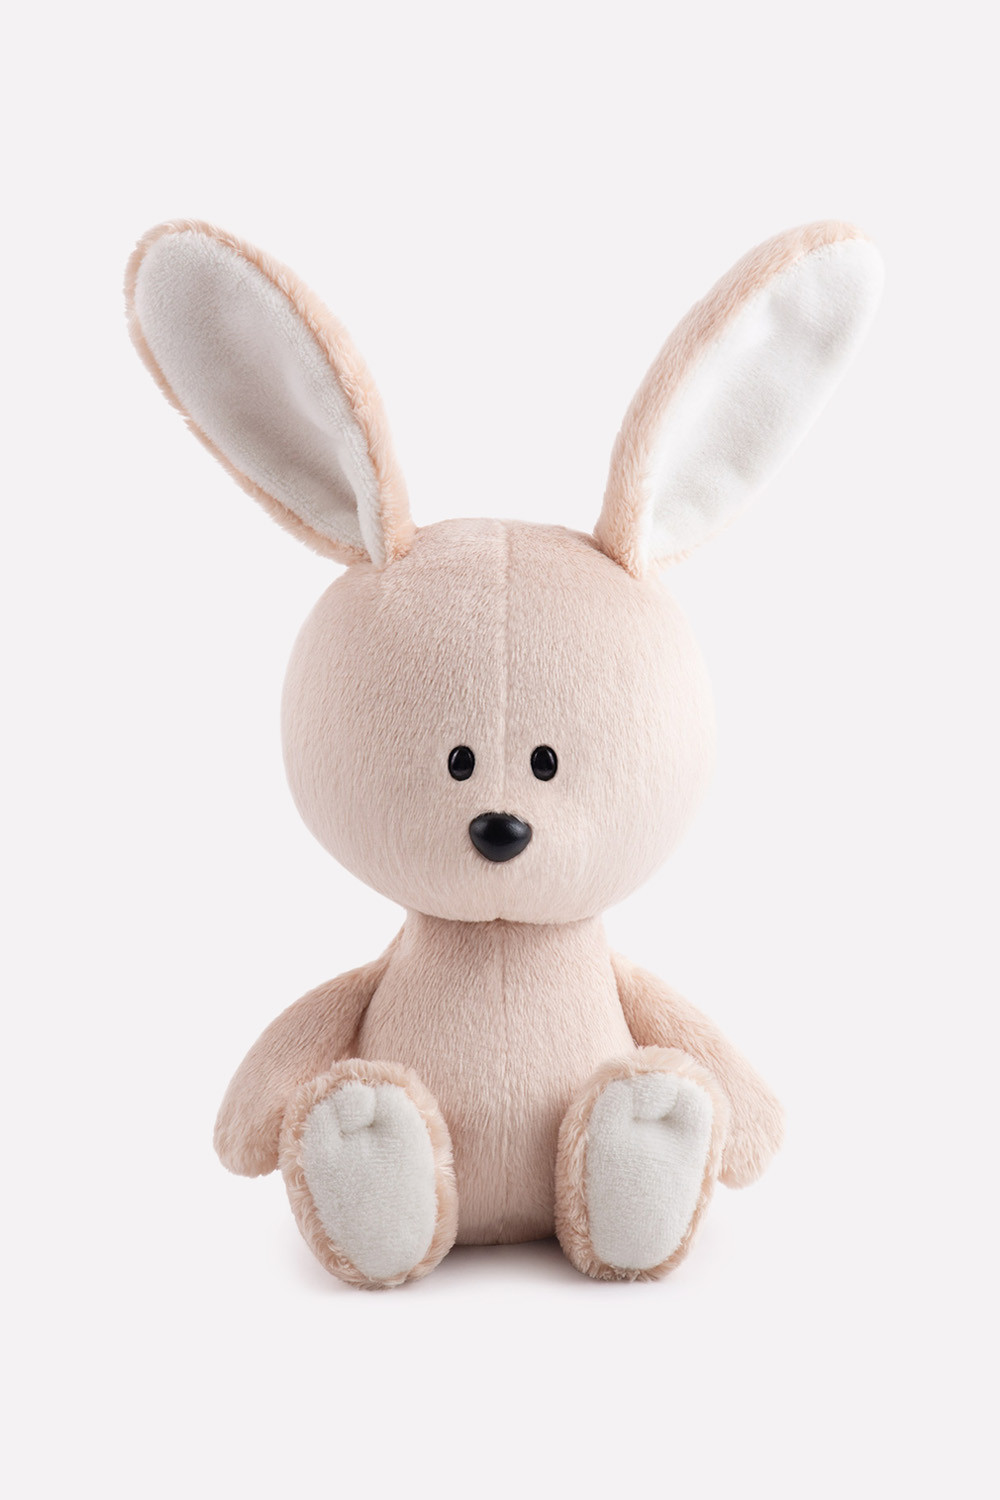 Игрушка заяц. Мягкая игрушка лесята заяц Антоша 15 см. Budi basa заяц. Заяц Антоша. Budi basa заяц мягкий.